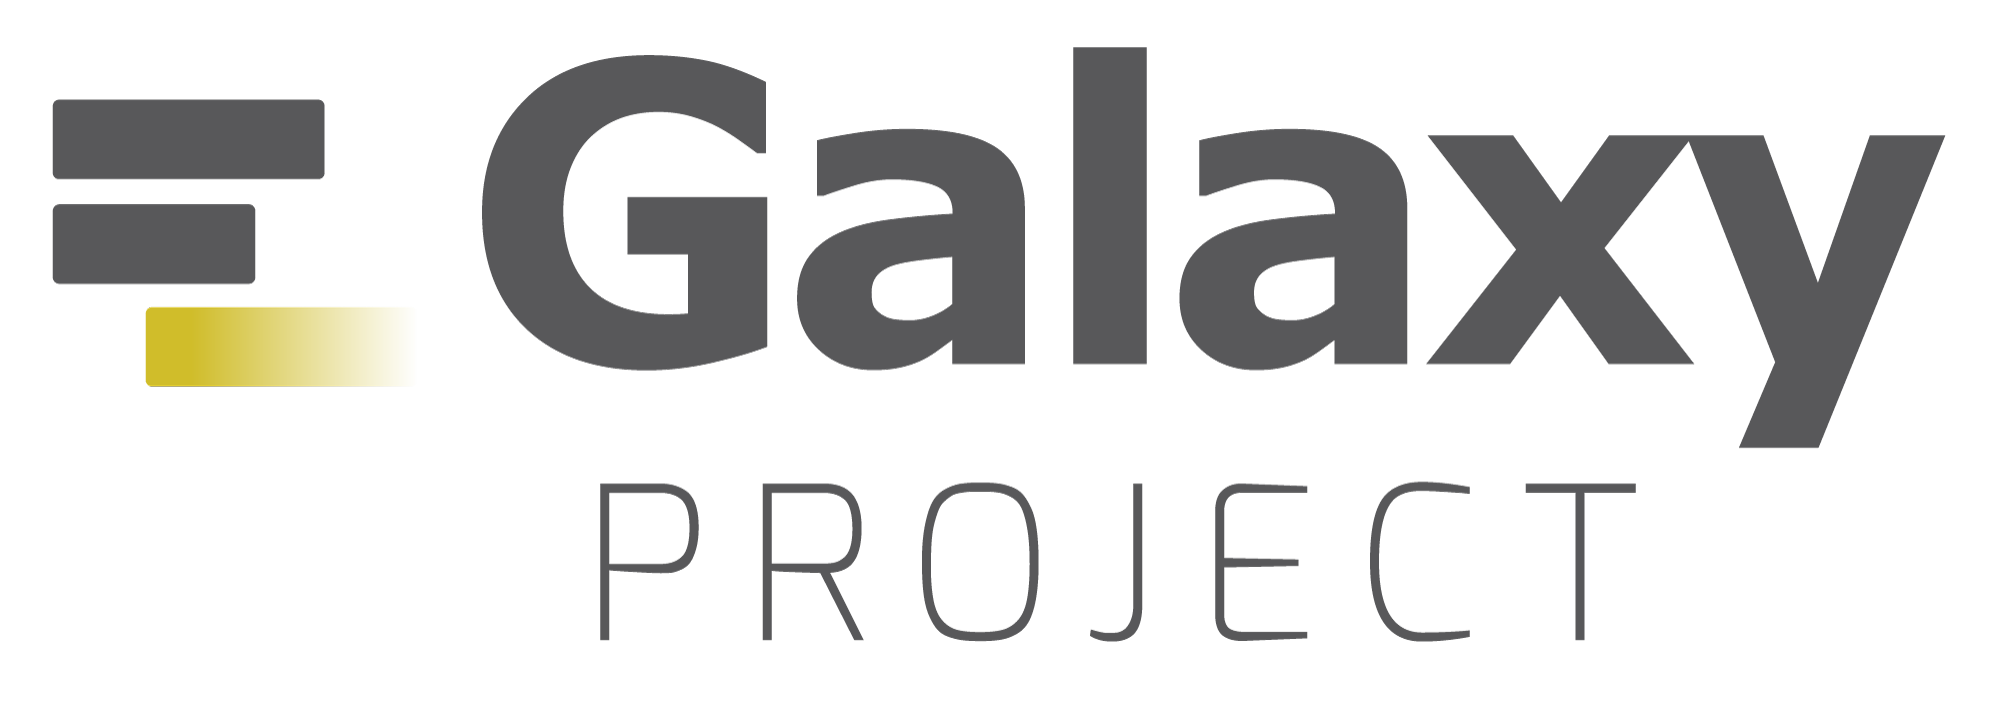 logo galaxy